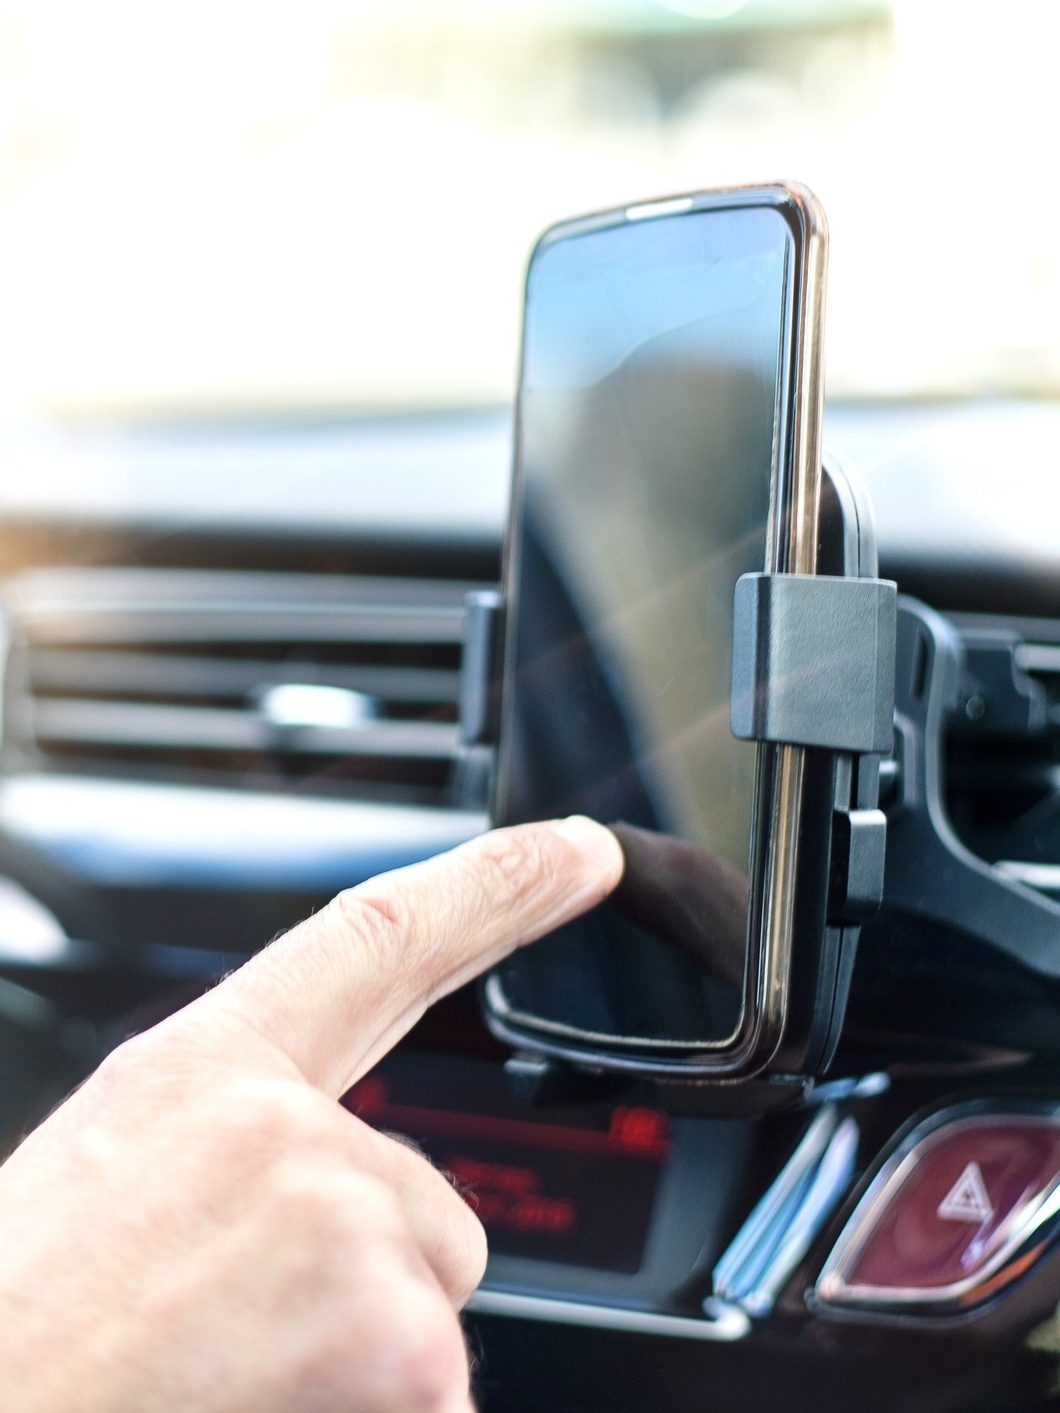 Suporte de celular para carro suporte de telefone de braço longo